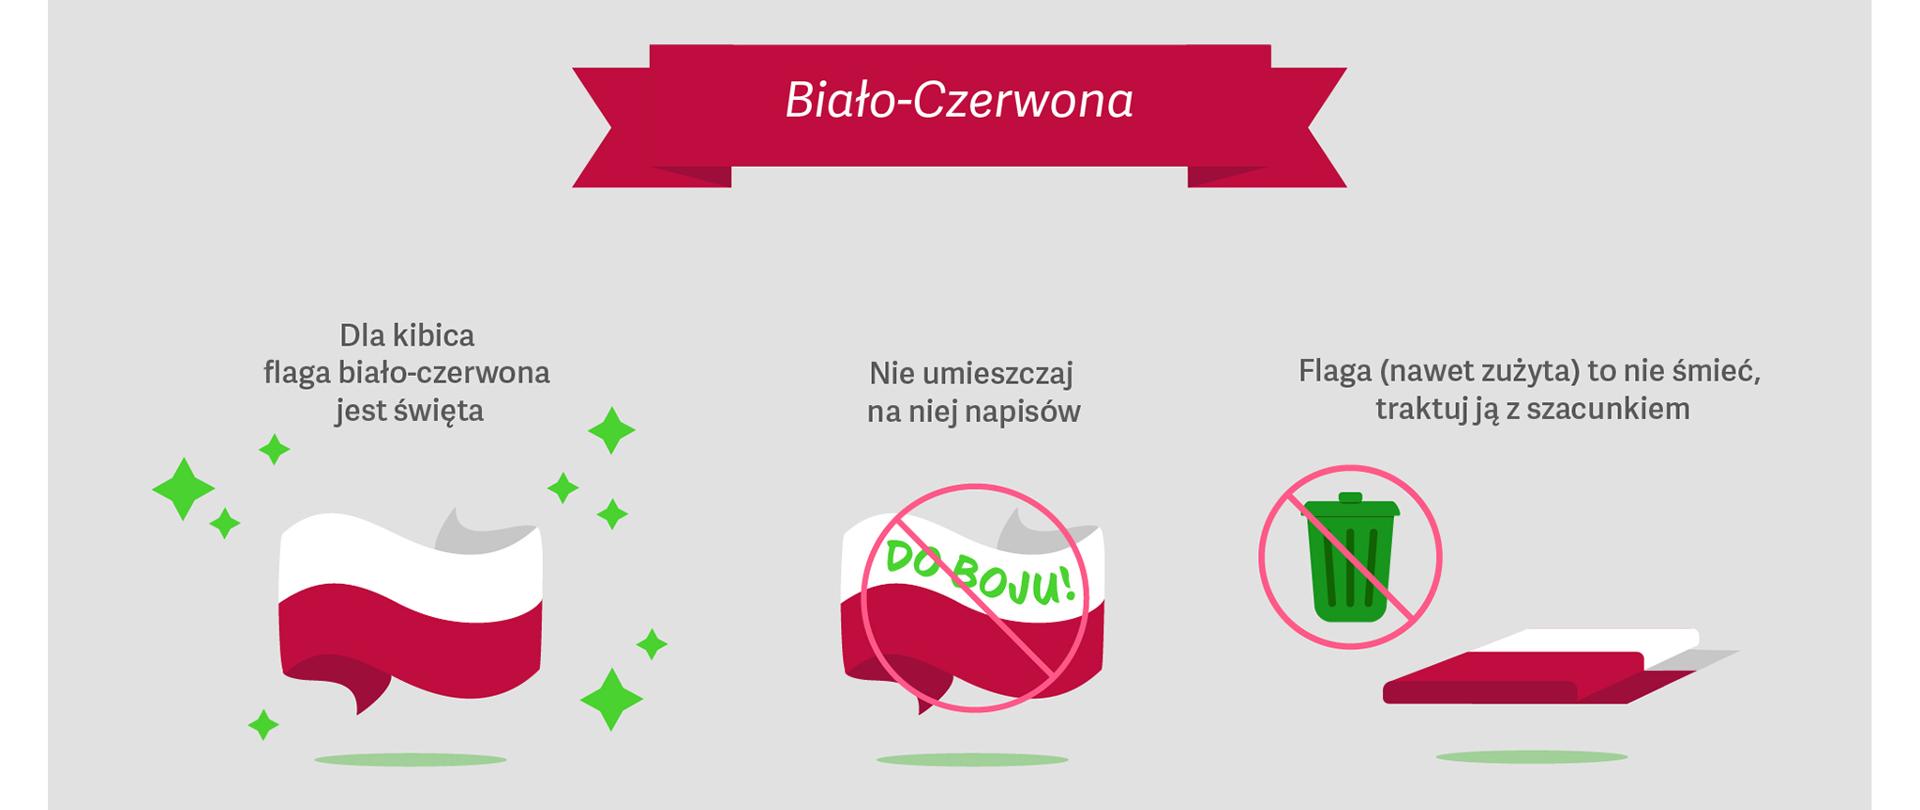 Sprawdź, jak dbać o polskie symbole narodowe. Poznaj Kodeks Kibica Reprezentacji!